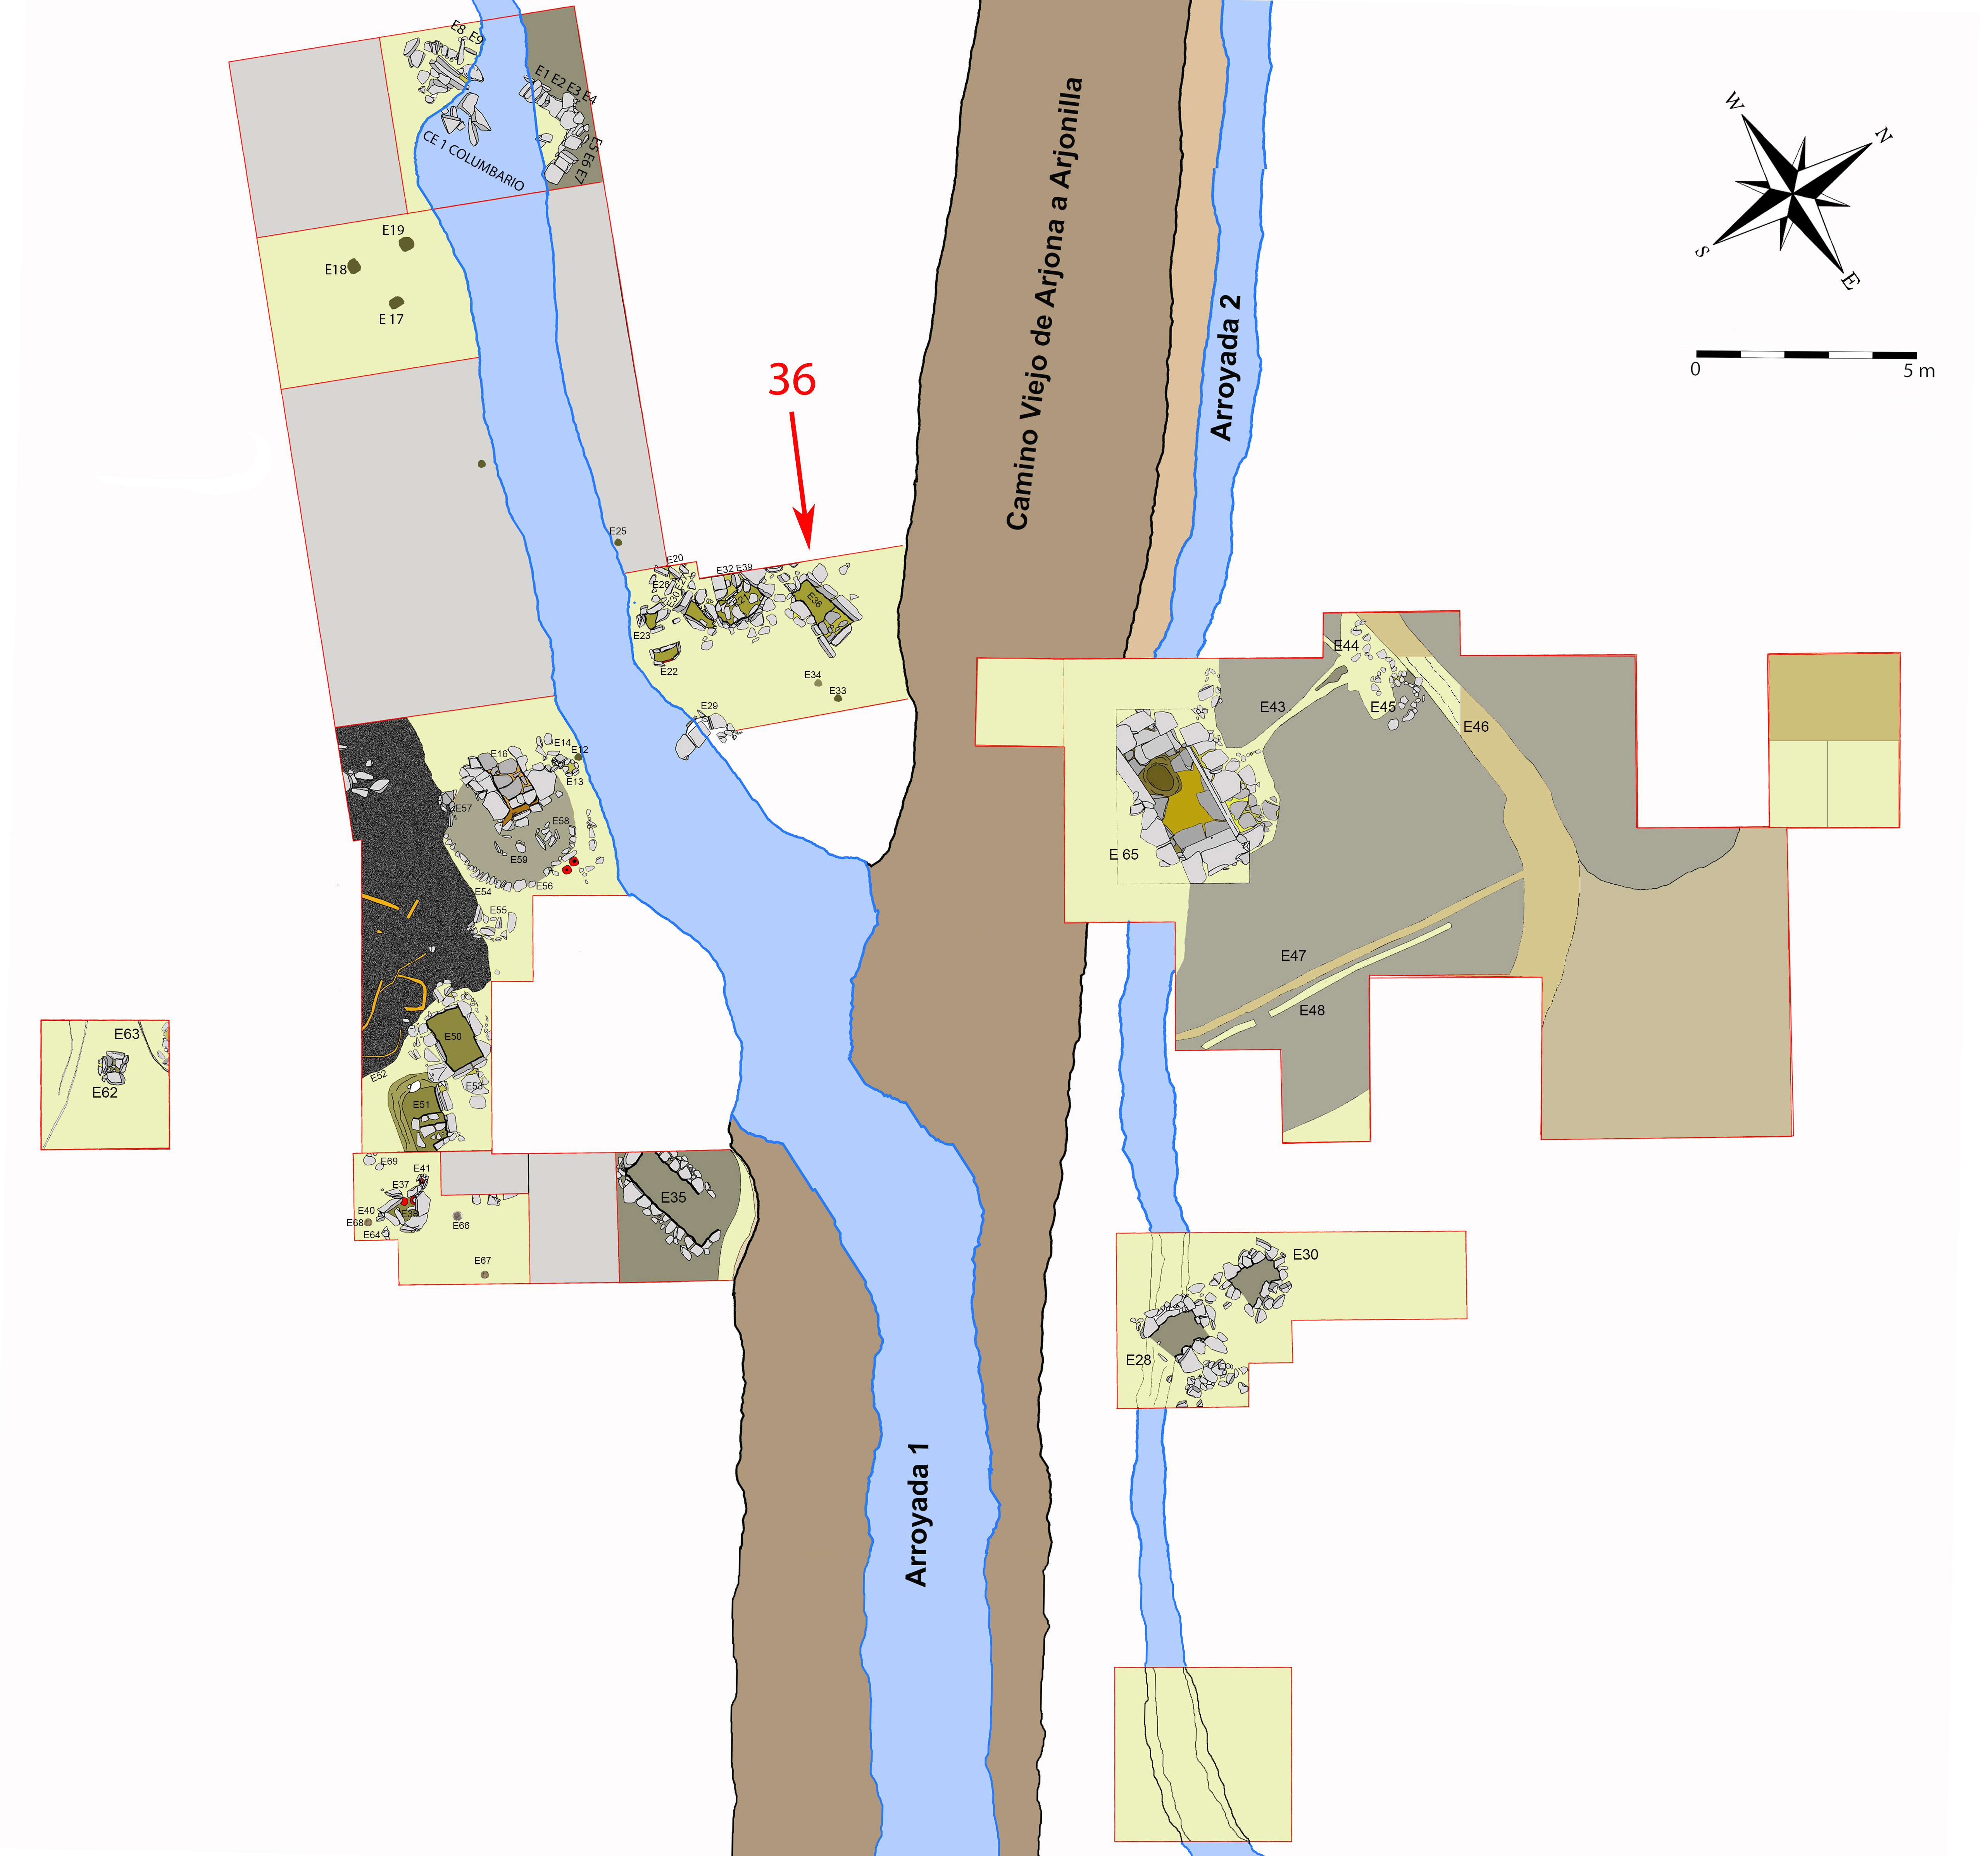 Plano general de la necrópolis de Piquía y localización de la tumba 36